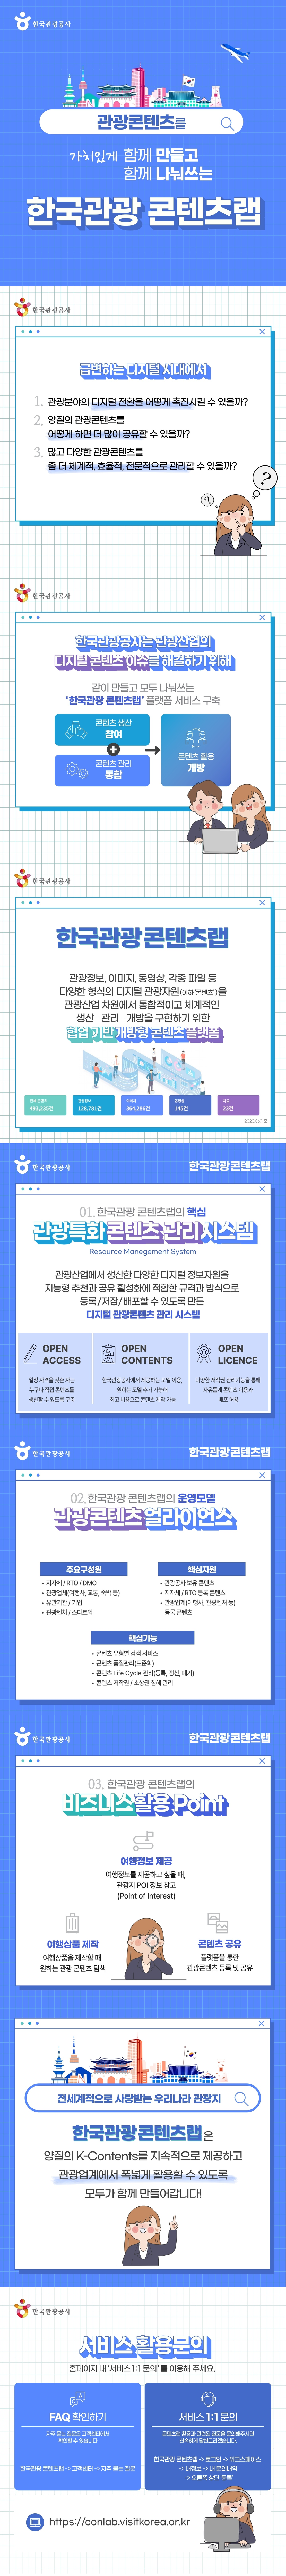 한국관광 콘텐츠랩 카드뉴스 1호 발행1